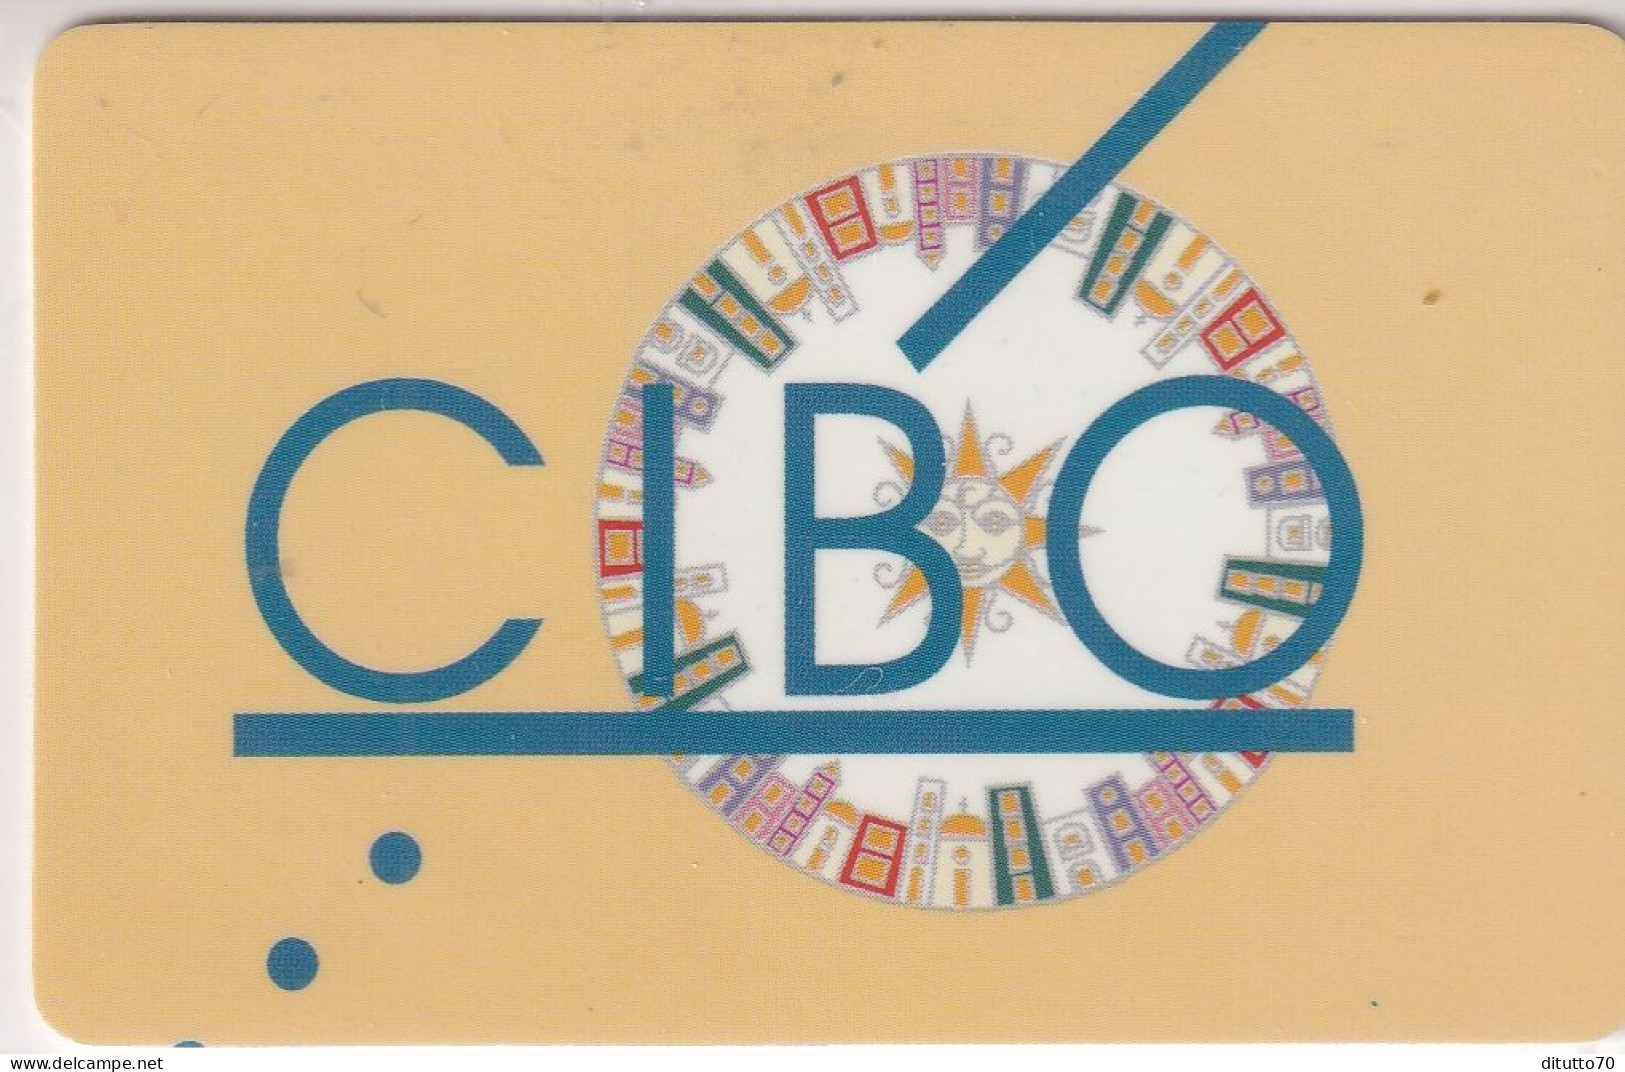 Calendarietto - Cibo - Napoli - Anno 1998 - Kleinformat : 1991-00